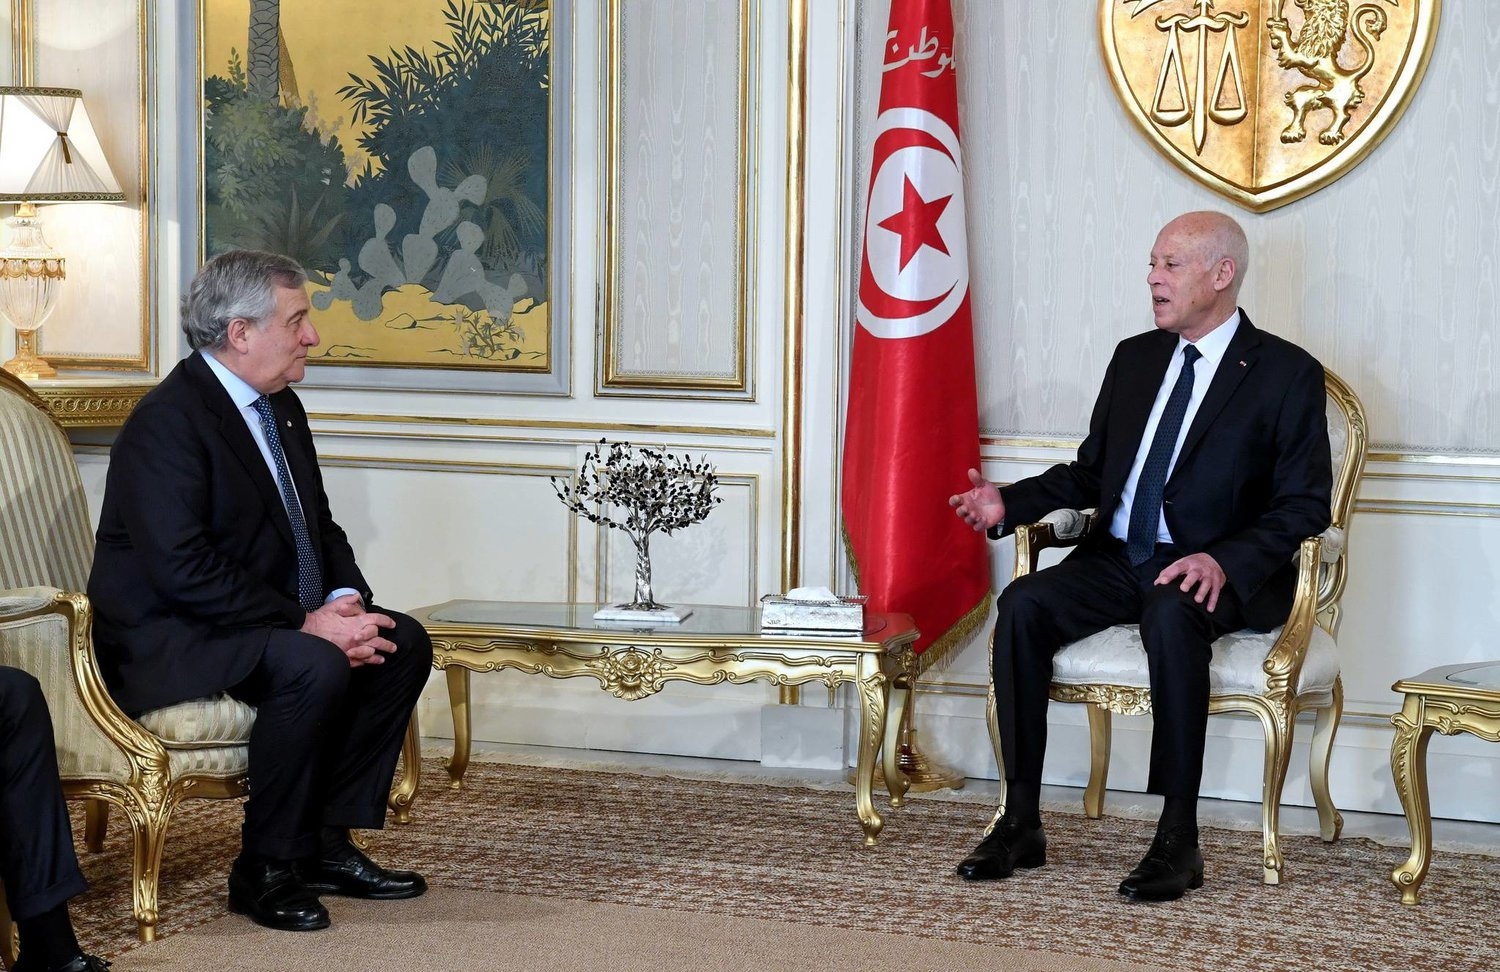 تونس تجدد رفضها مساعدة مالية من أوروبا